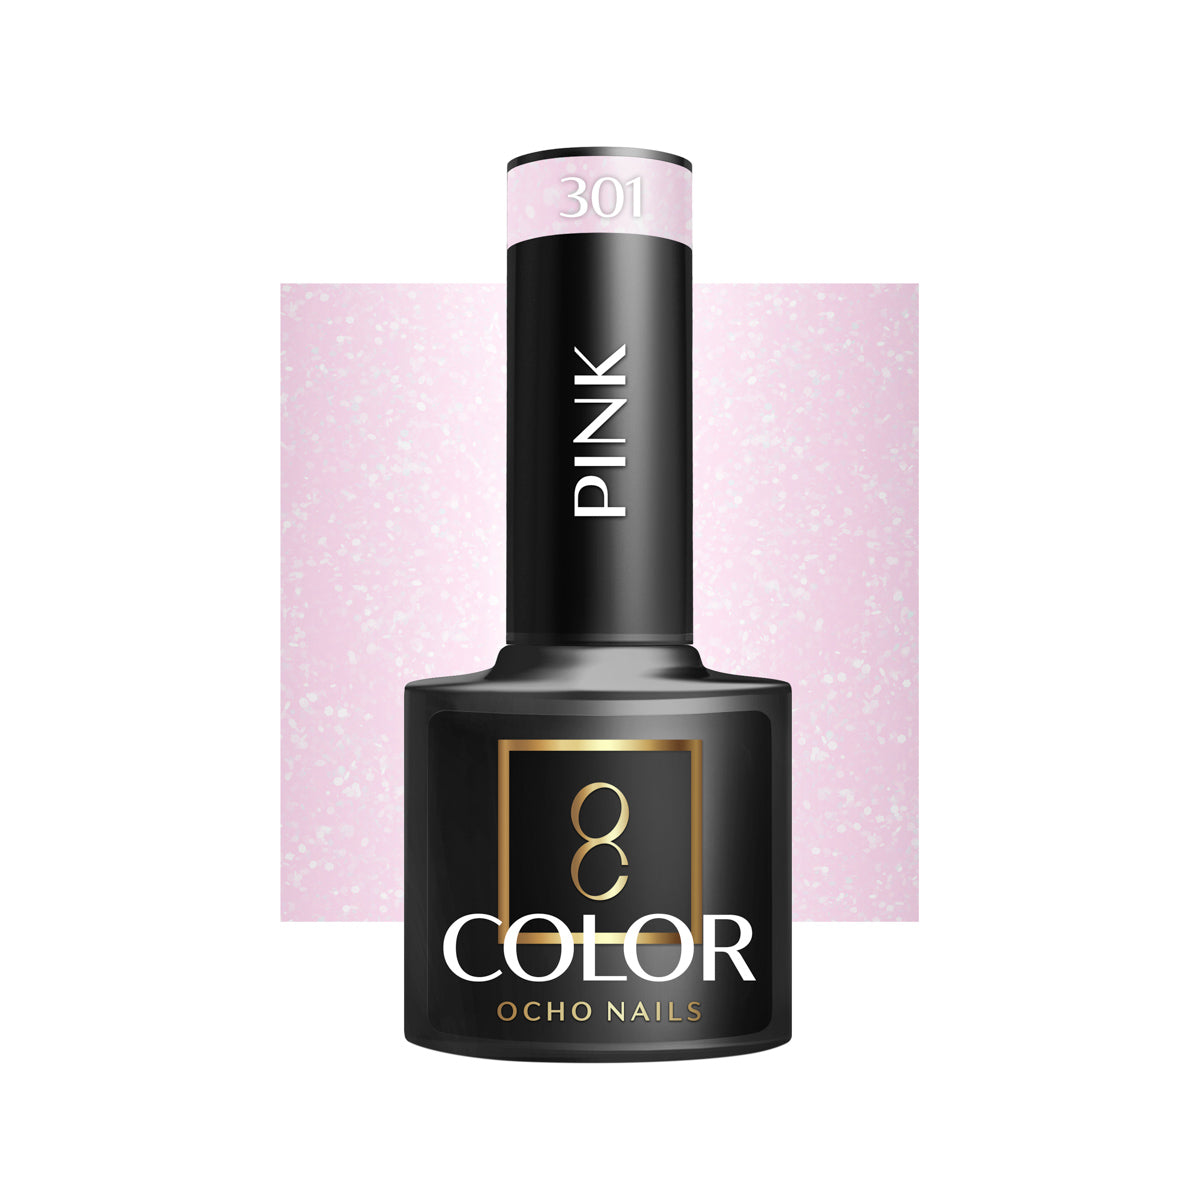 OCHO NAILS Hybride nagellak roze 301 -5 g